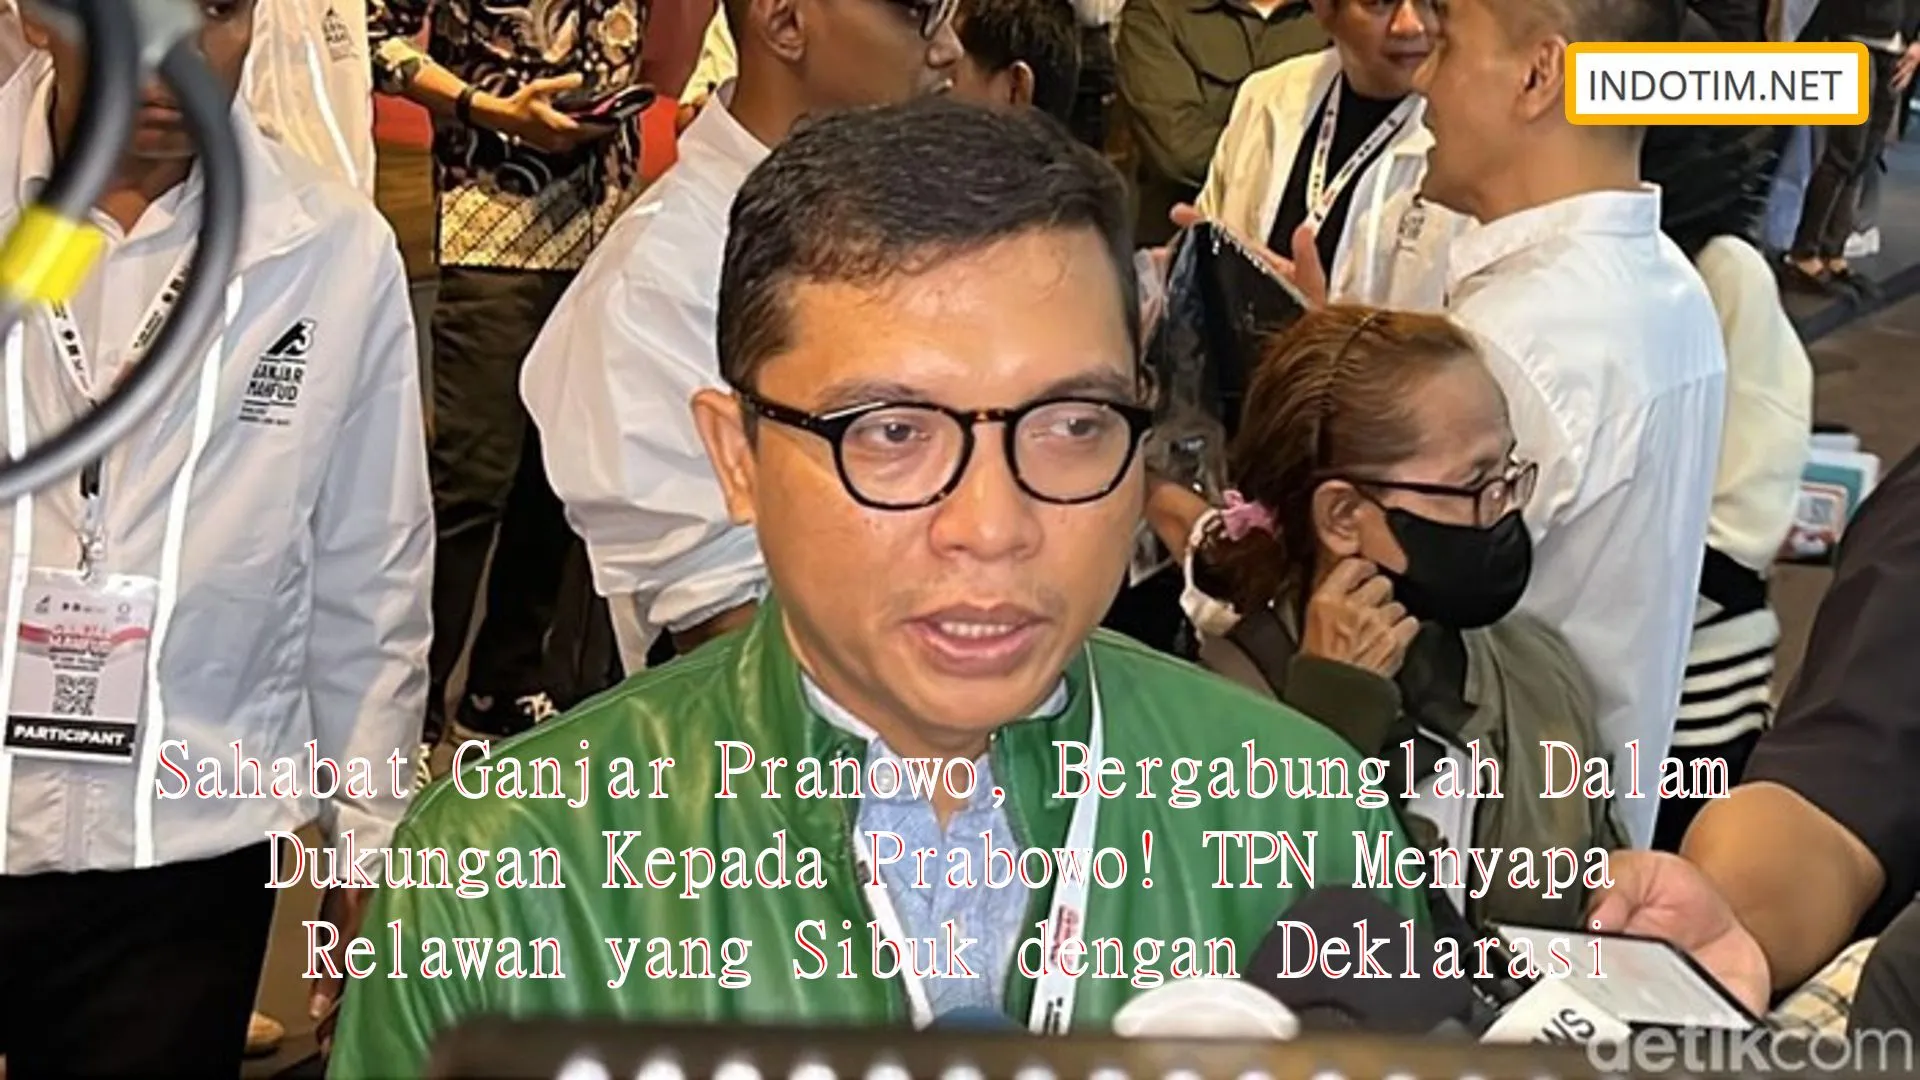 Sahabat Ganjar Pranowo, Bergabunglah Dalam Dukungan Kepada Prabowo! TPN Menyapa Relawan yang Sibuk dengan Deklarasi